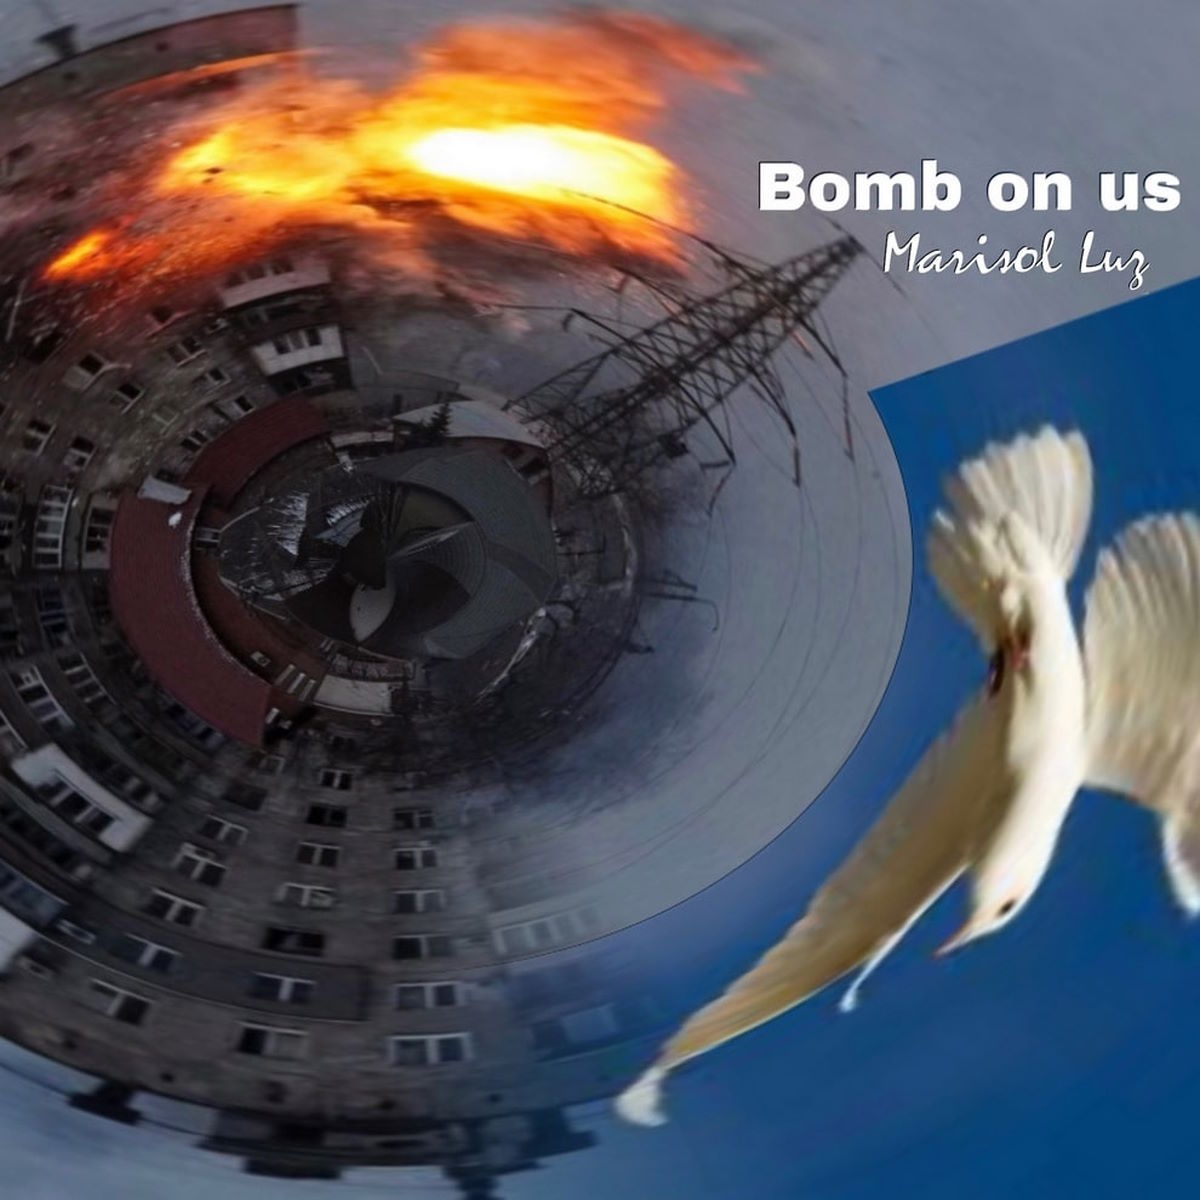 Esplode Bomb on us, il grido di pace di Marisol Luz